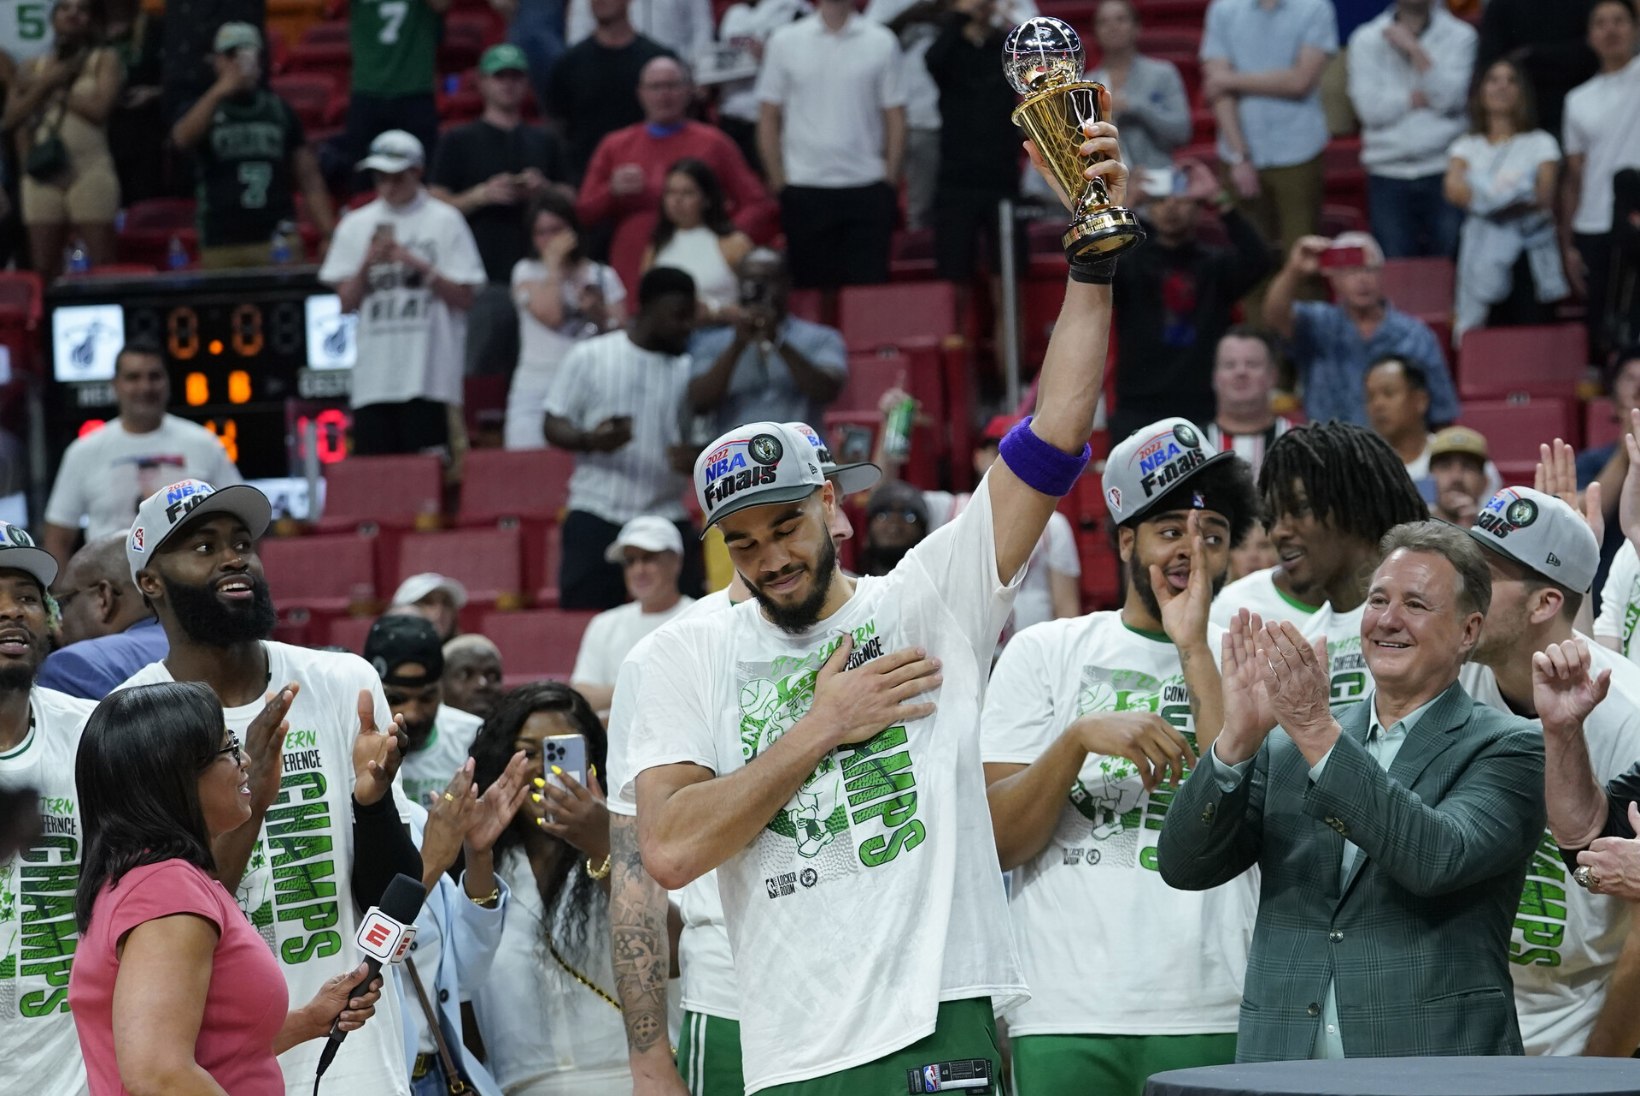 IMELINE ÜMBERSÜND! Pehmed noored, väeti vanameister ja uustulnukast treener – kas hooaega kohutavalt alustanud Celtics võidab üllatuslikult NBA tiitli?